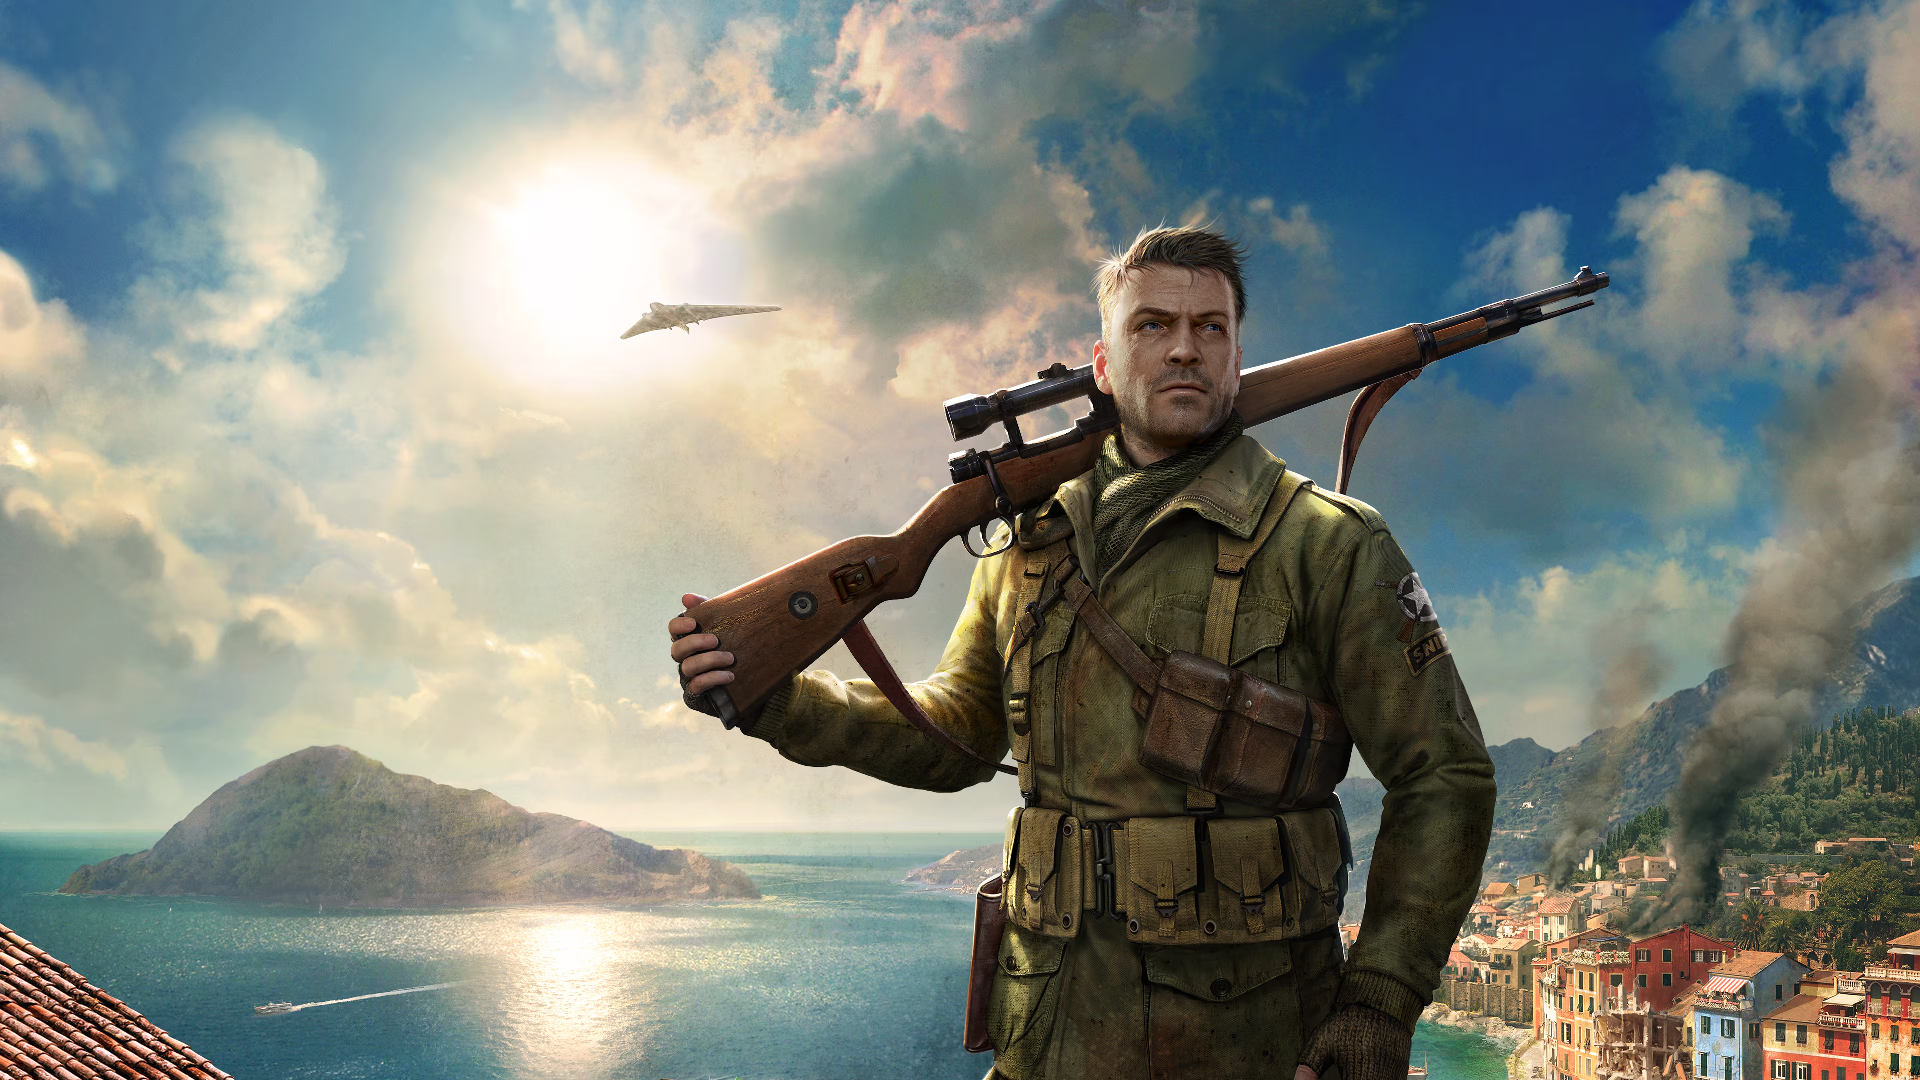 Nhanh tay sở hữu toàn bộ dòng game bắn tỉa Sniper Elite với giá cực rẻ trên Steam